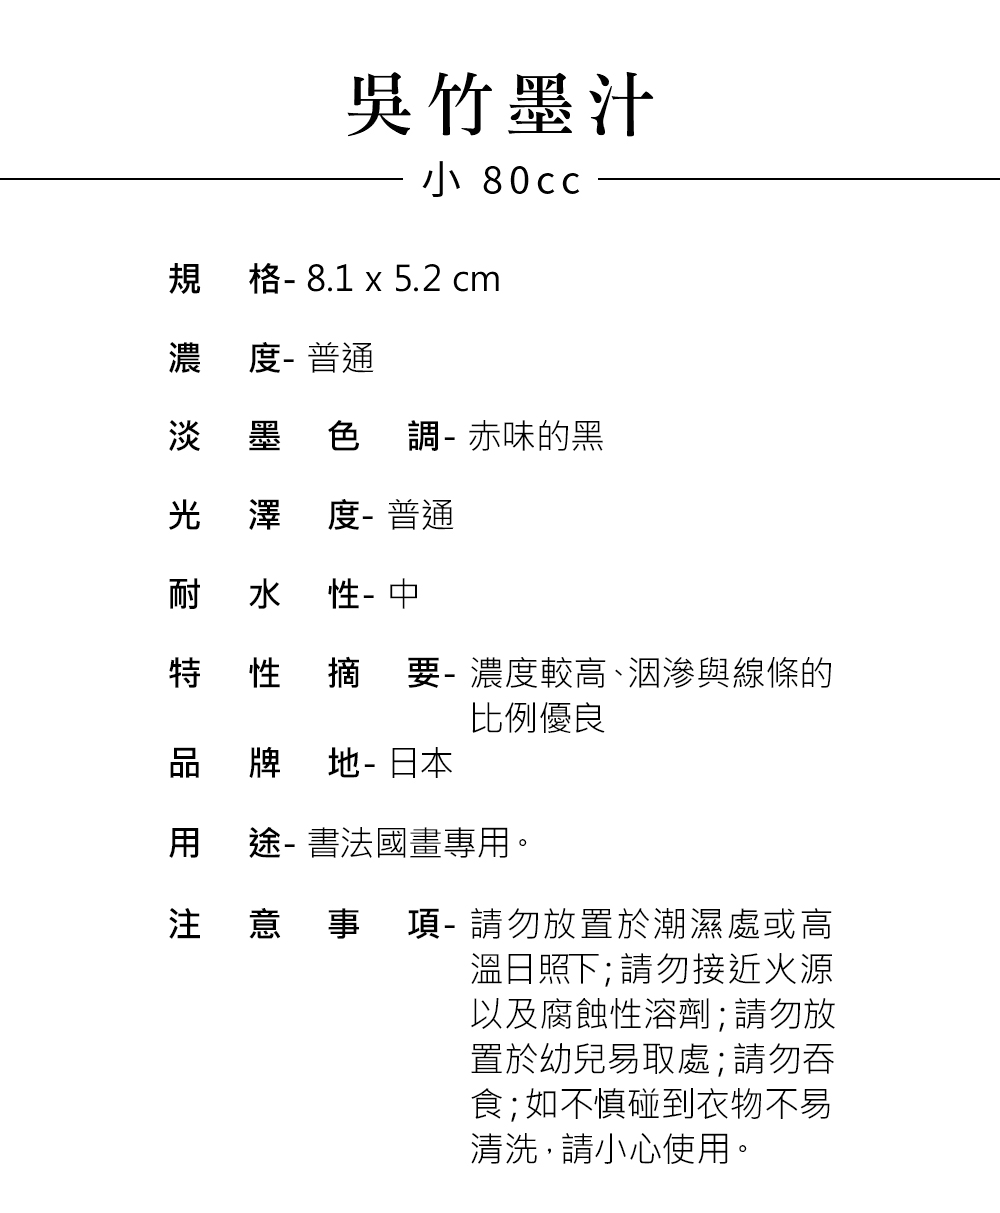 吳竹墨汁小(80c.c)_商品尺寸